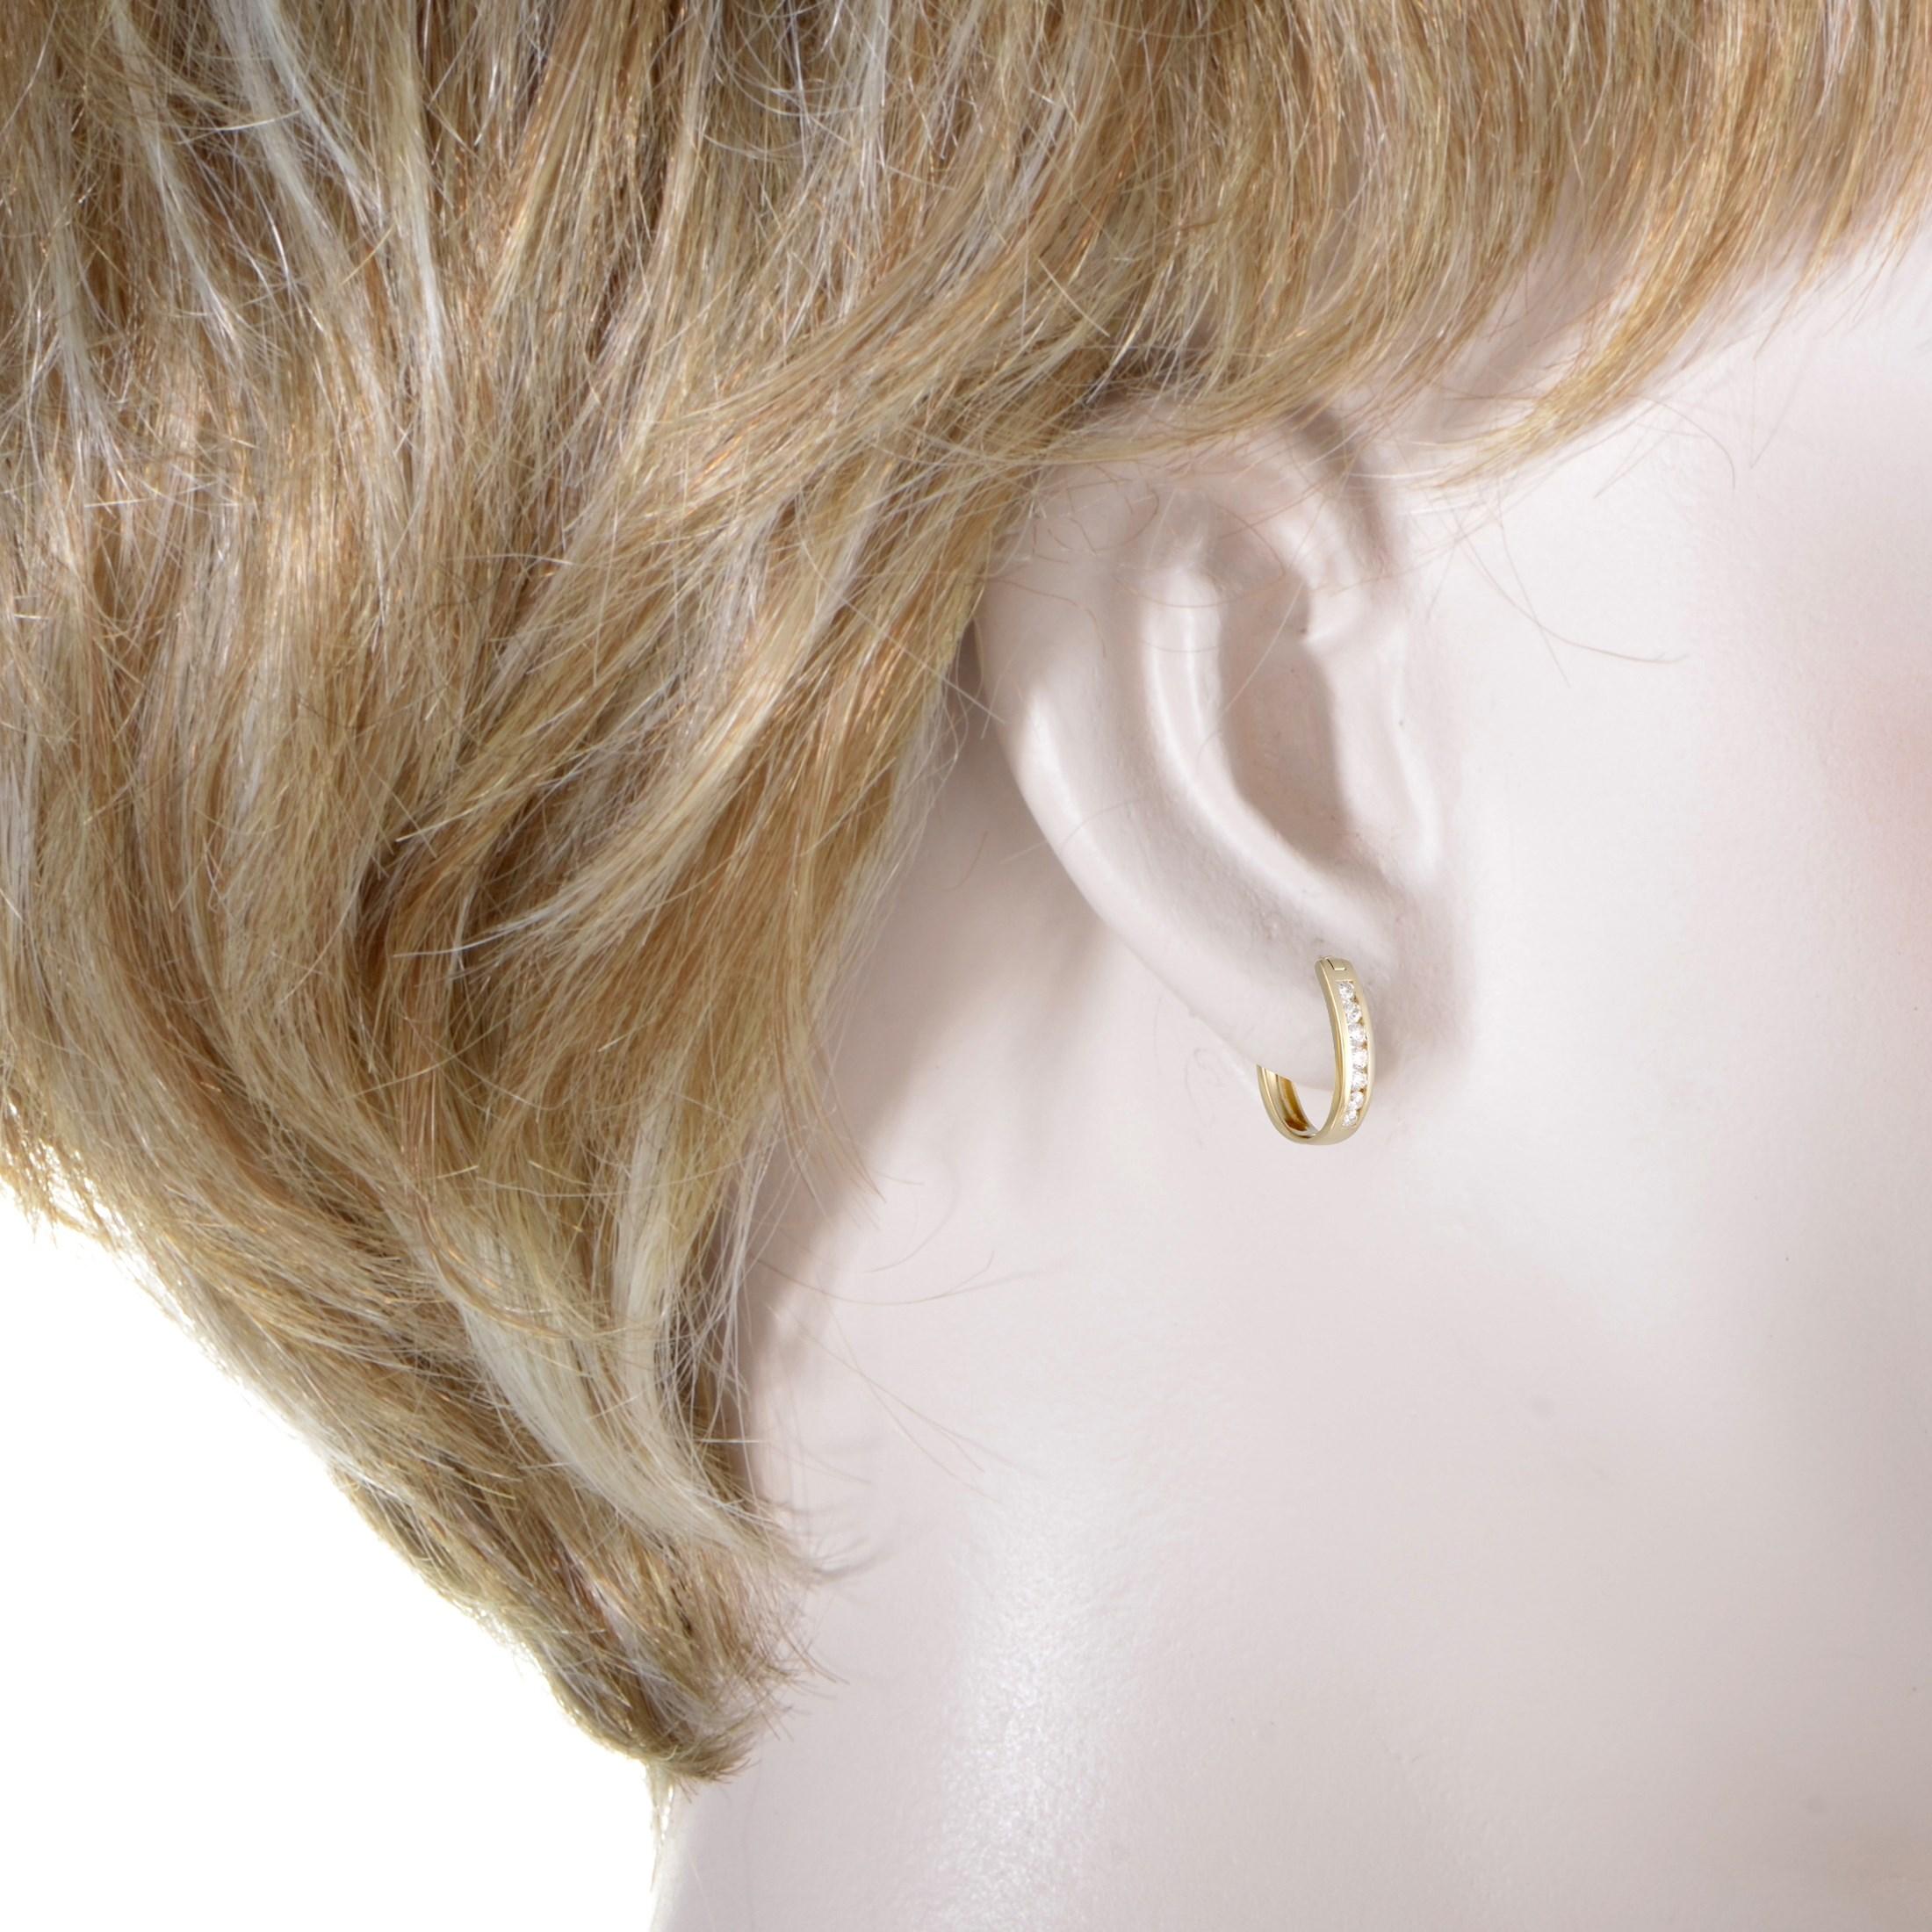 Das zierliche, feminine Design und die geschmackvolle Diamantverzierung machen diese Ohrringe zu einem Paar von großem ästhetischen Reiz. Die Ohrringe sind aus 14 Karat Gelbgold gefertigt und mit Diamanten von insgesamt 0,25 Karat besetzt.
